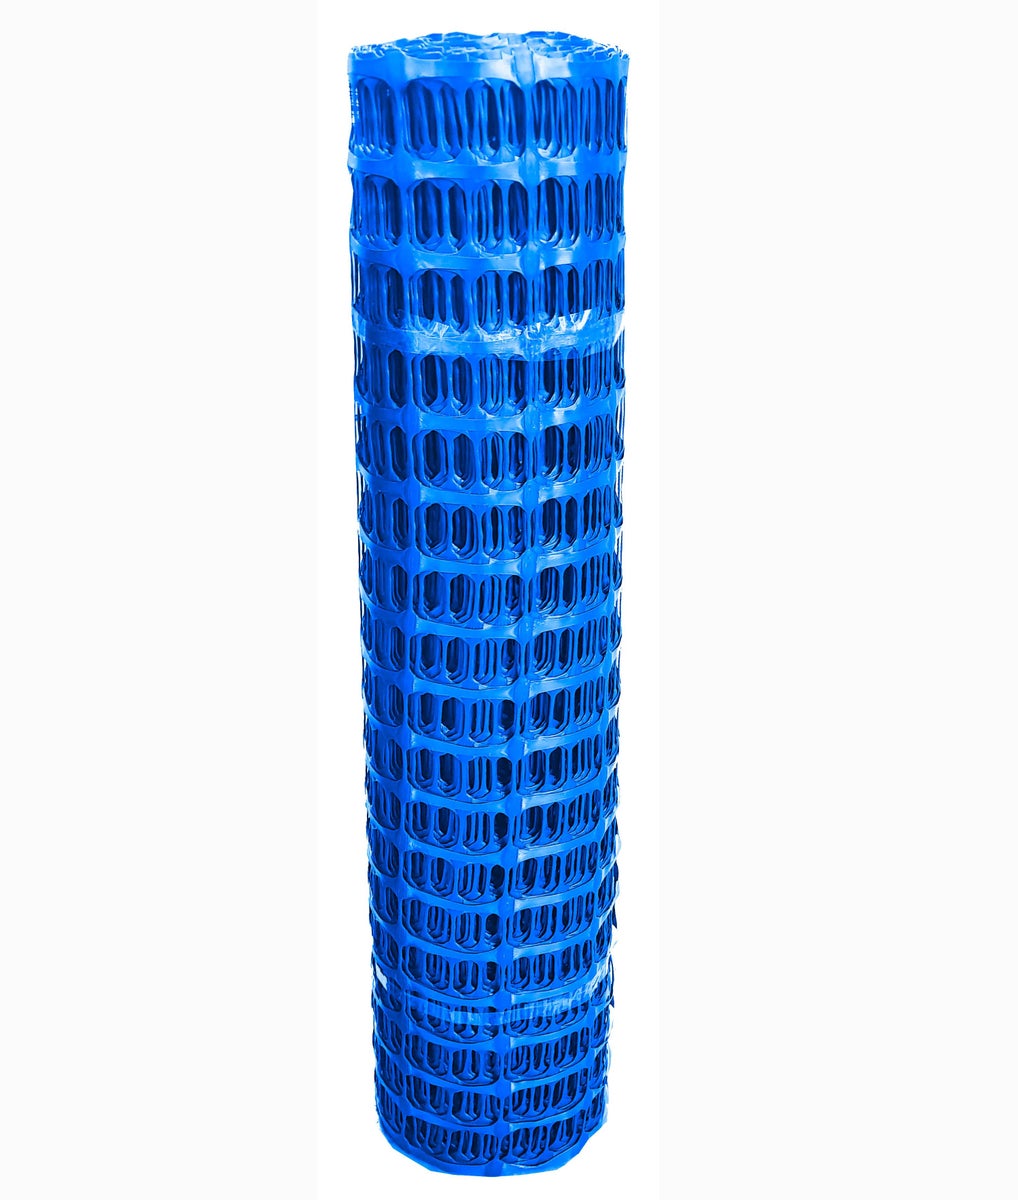 Fangzaun UvV SOLIDO Warnzaun Absperrnetz Bauzaun Kunststoff Rolle 50 x 1m | 7,5kg / blau